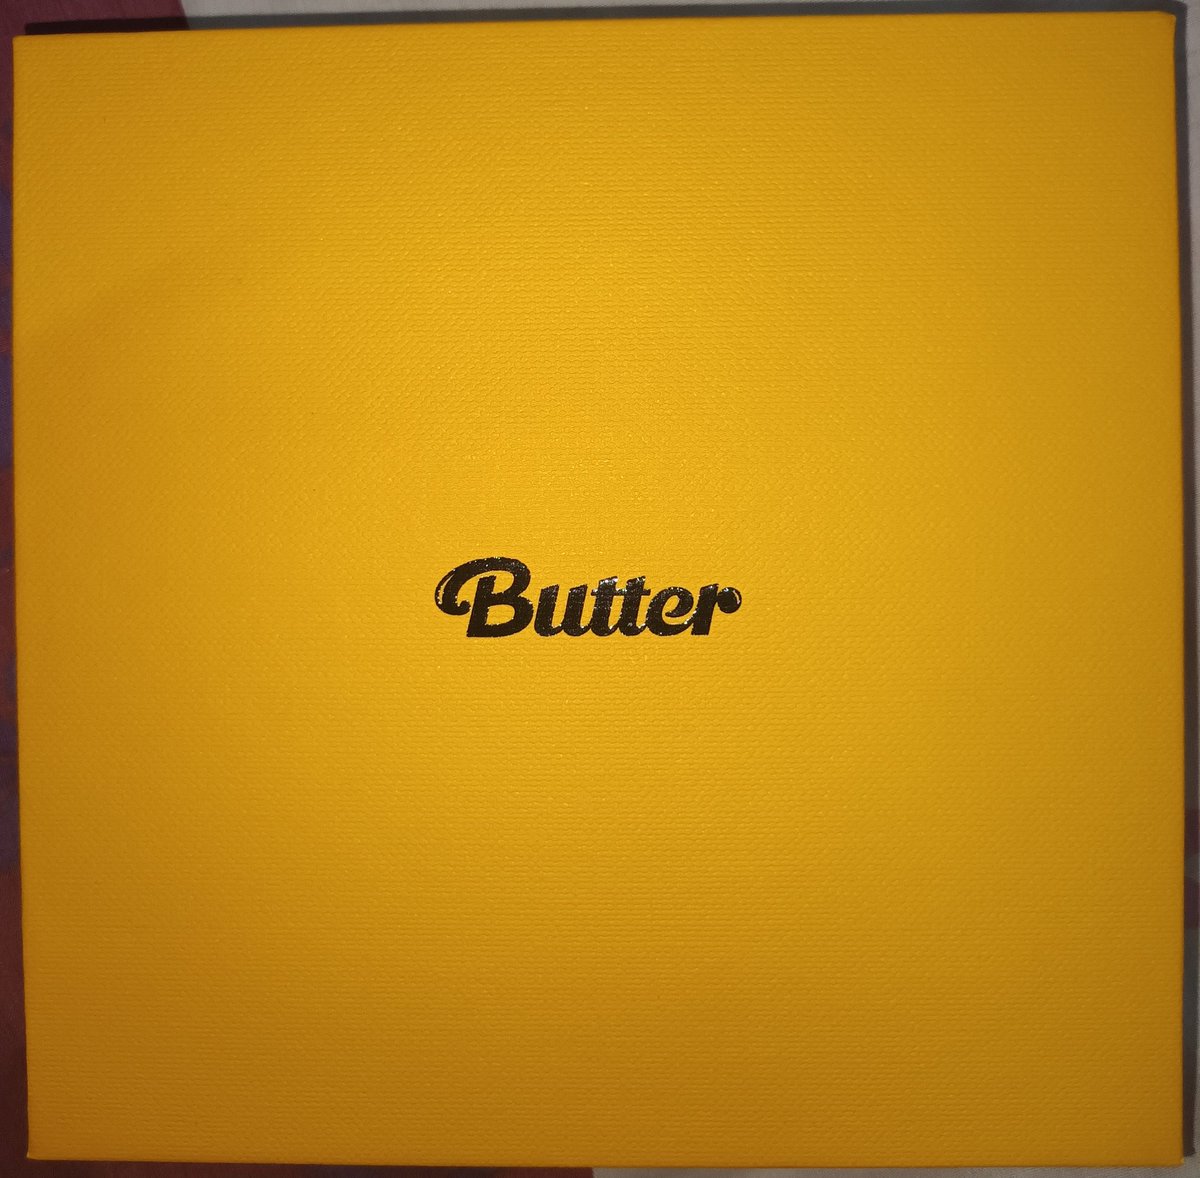 ขายบั้มเปล่า  Butter 
เวอร์ Cream 250 รวมส่ง
สนใจทักมาสอบถามเพิ่มเติมได้เลยค่ะ 
#ตลาดนัดบังทัน #ของสะสมบังทัน #ปล่อยของสะสมบังทัน #บั้มbutter #บั้มเปล่าบังทัน #บั้มเปล่าbutter